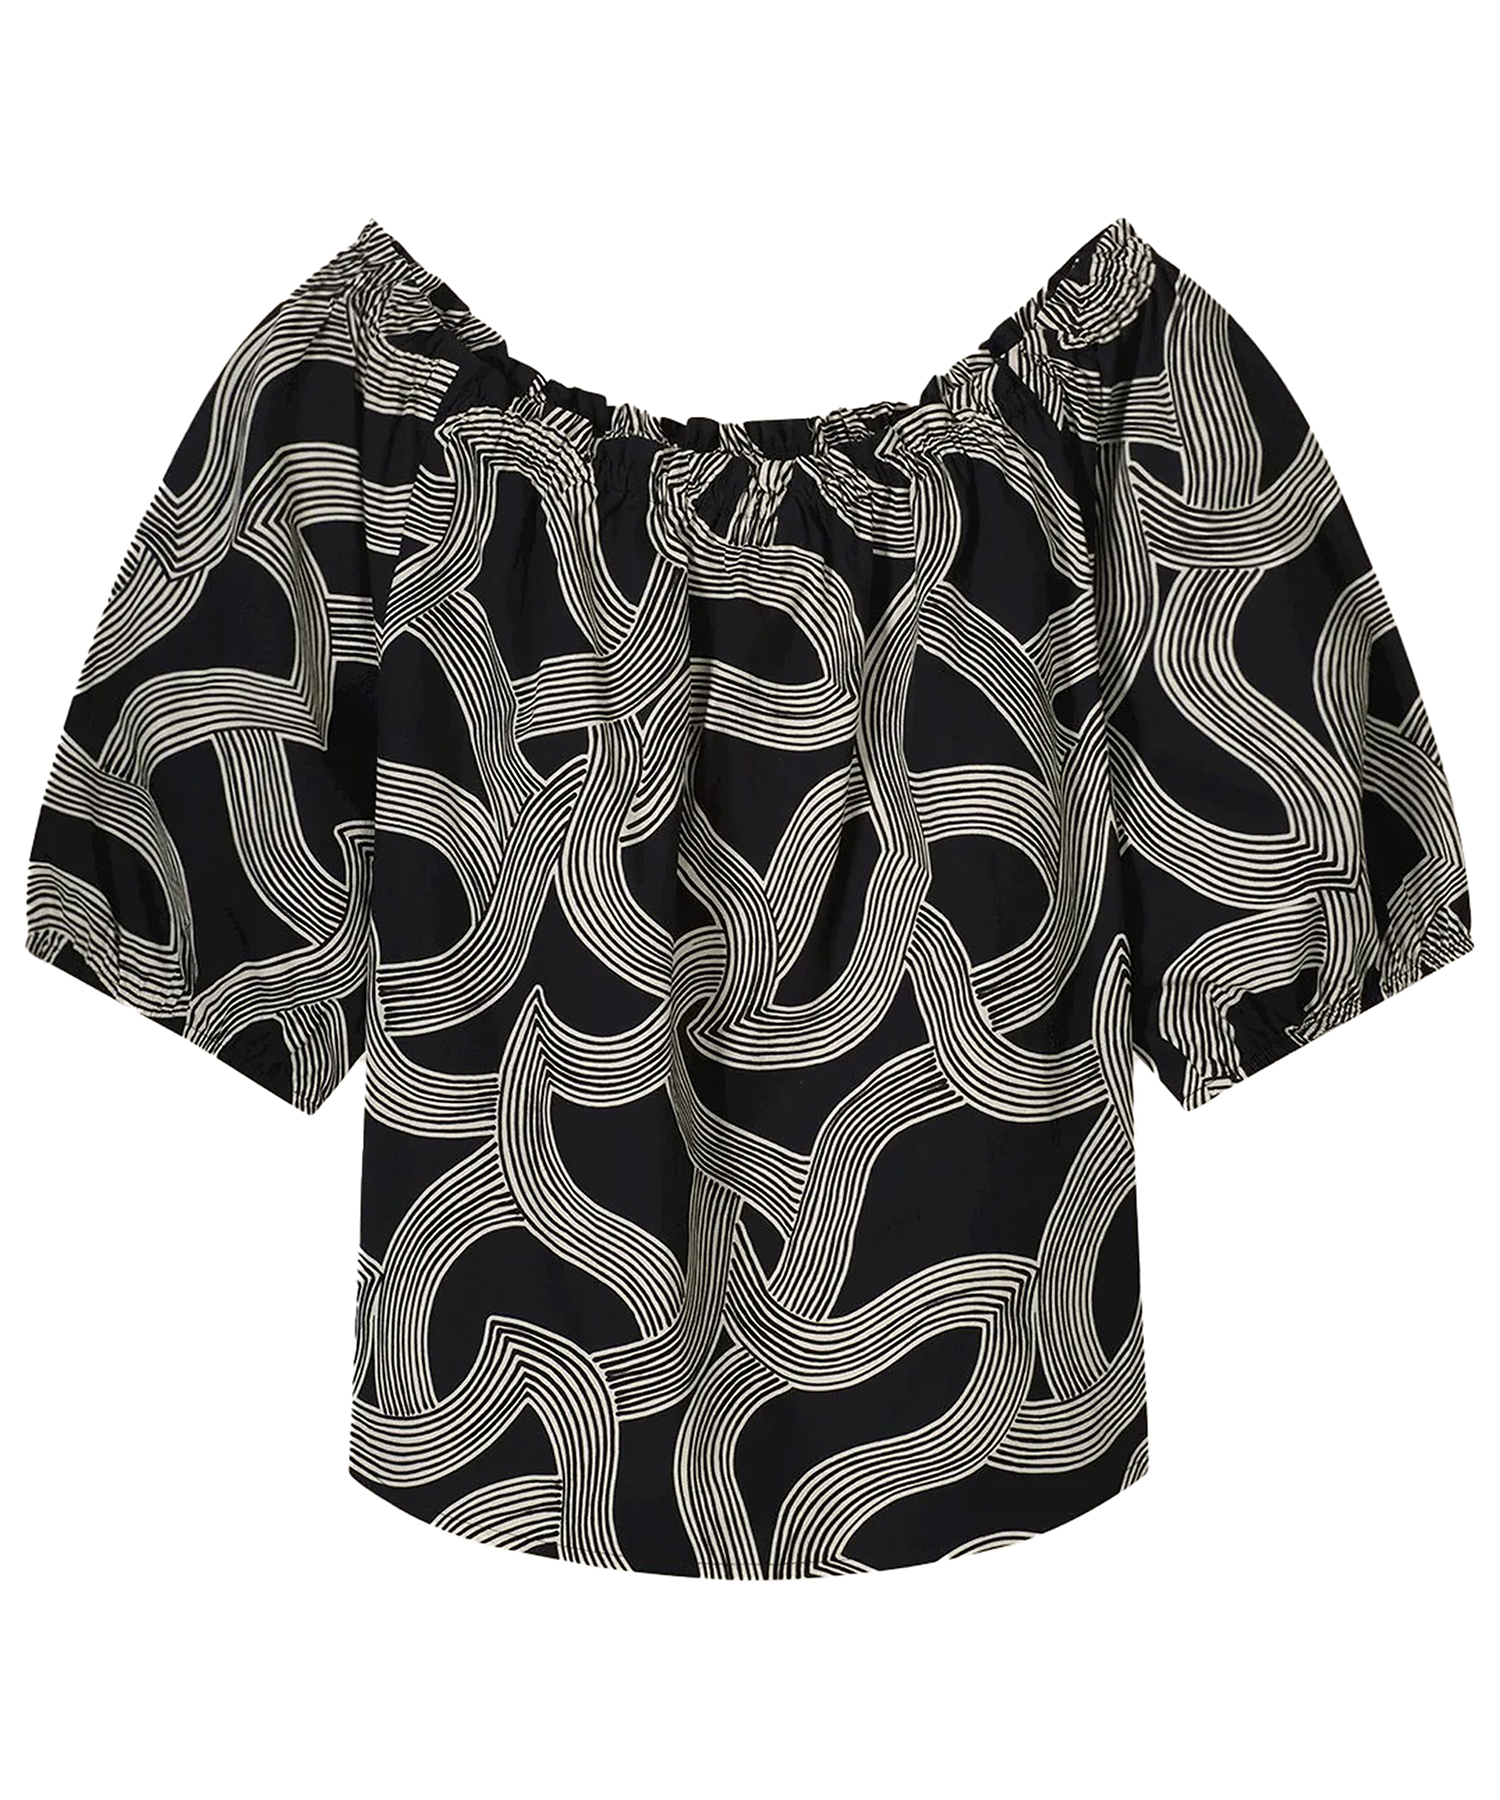 wekelijks Kerel heuvel Summum off-shoulder blouse swirl | BeOne